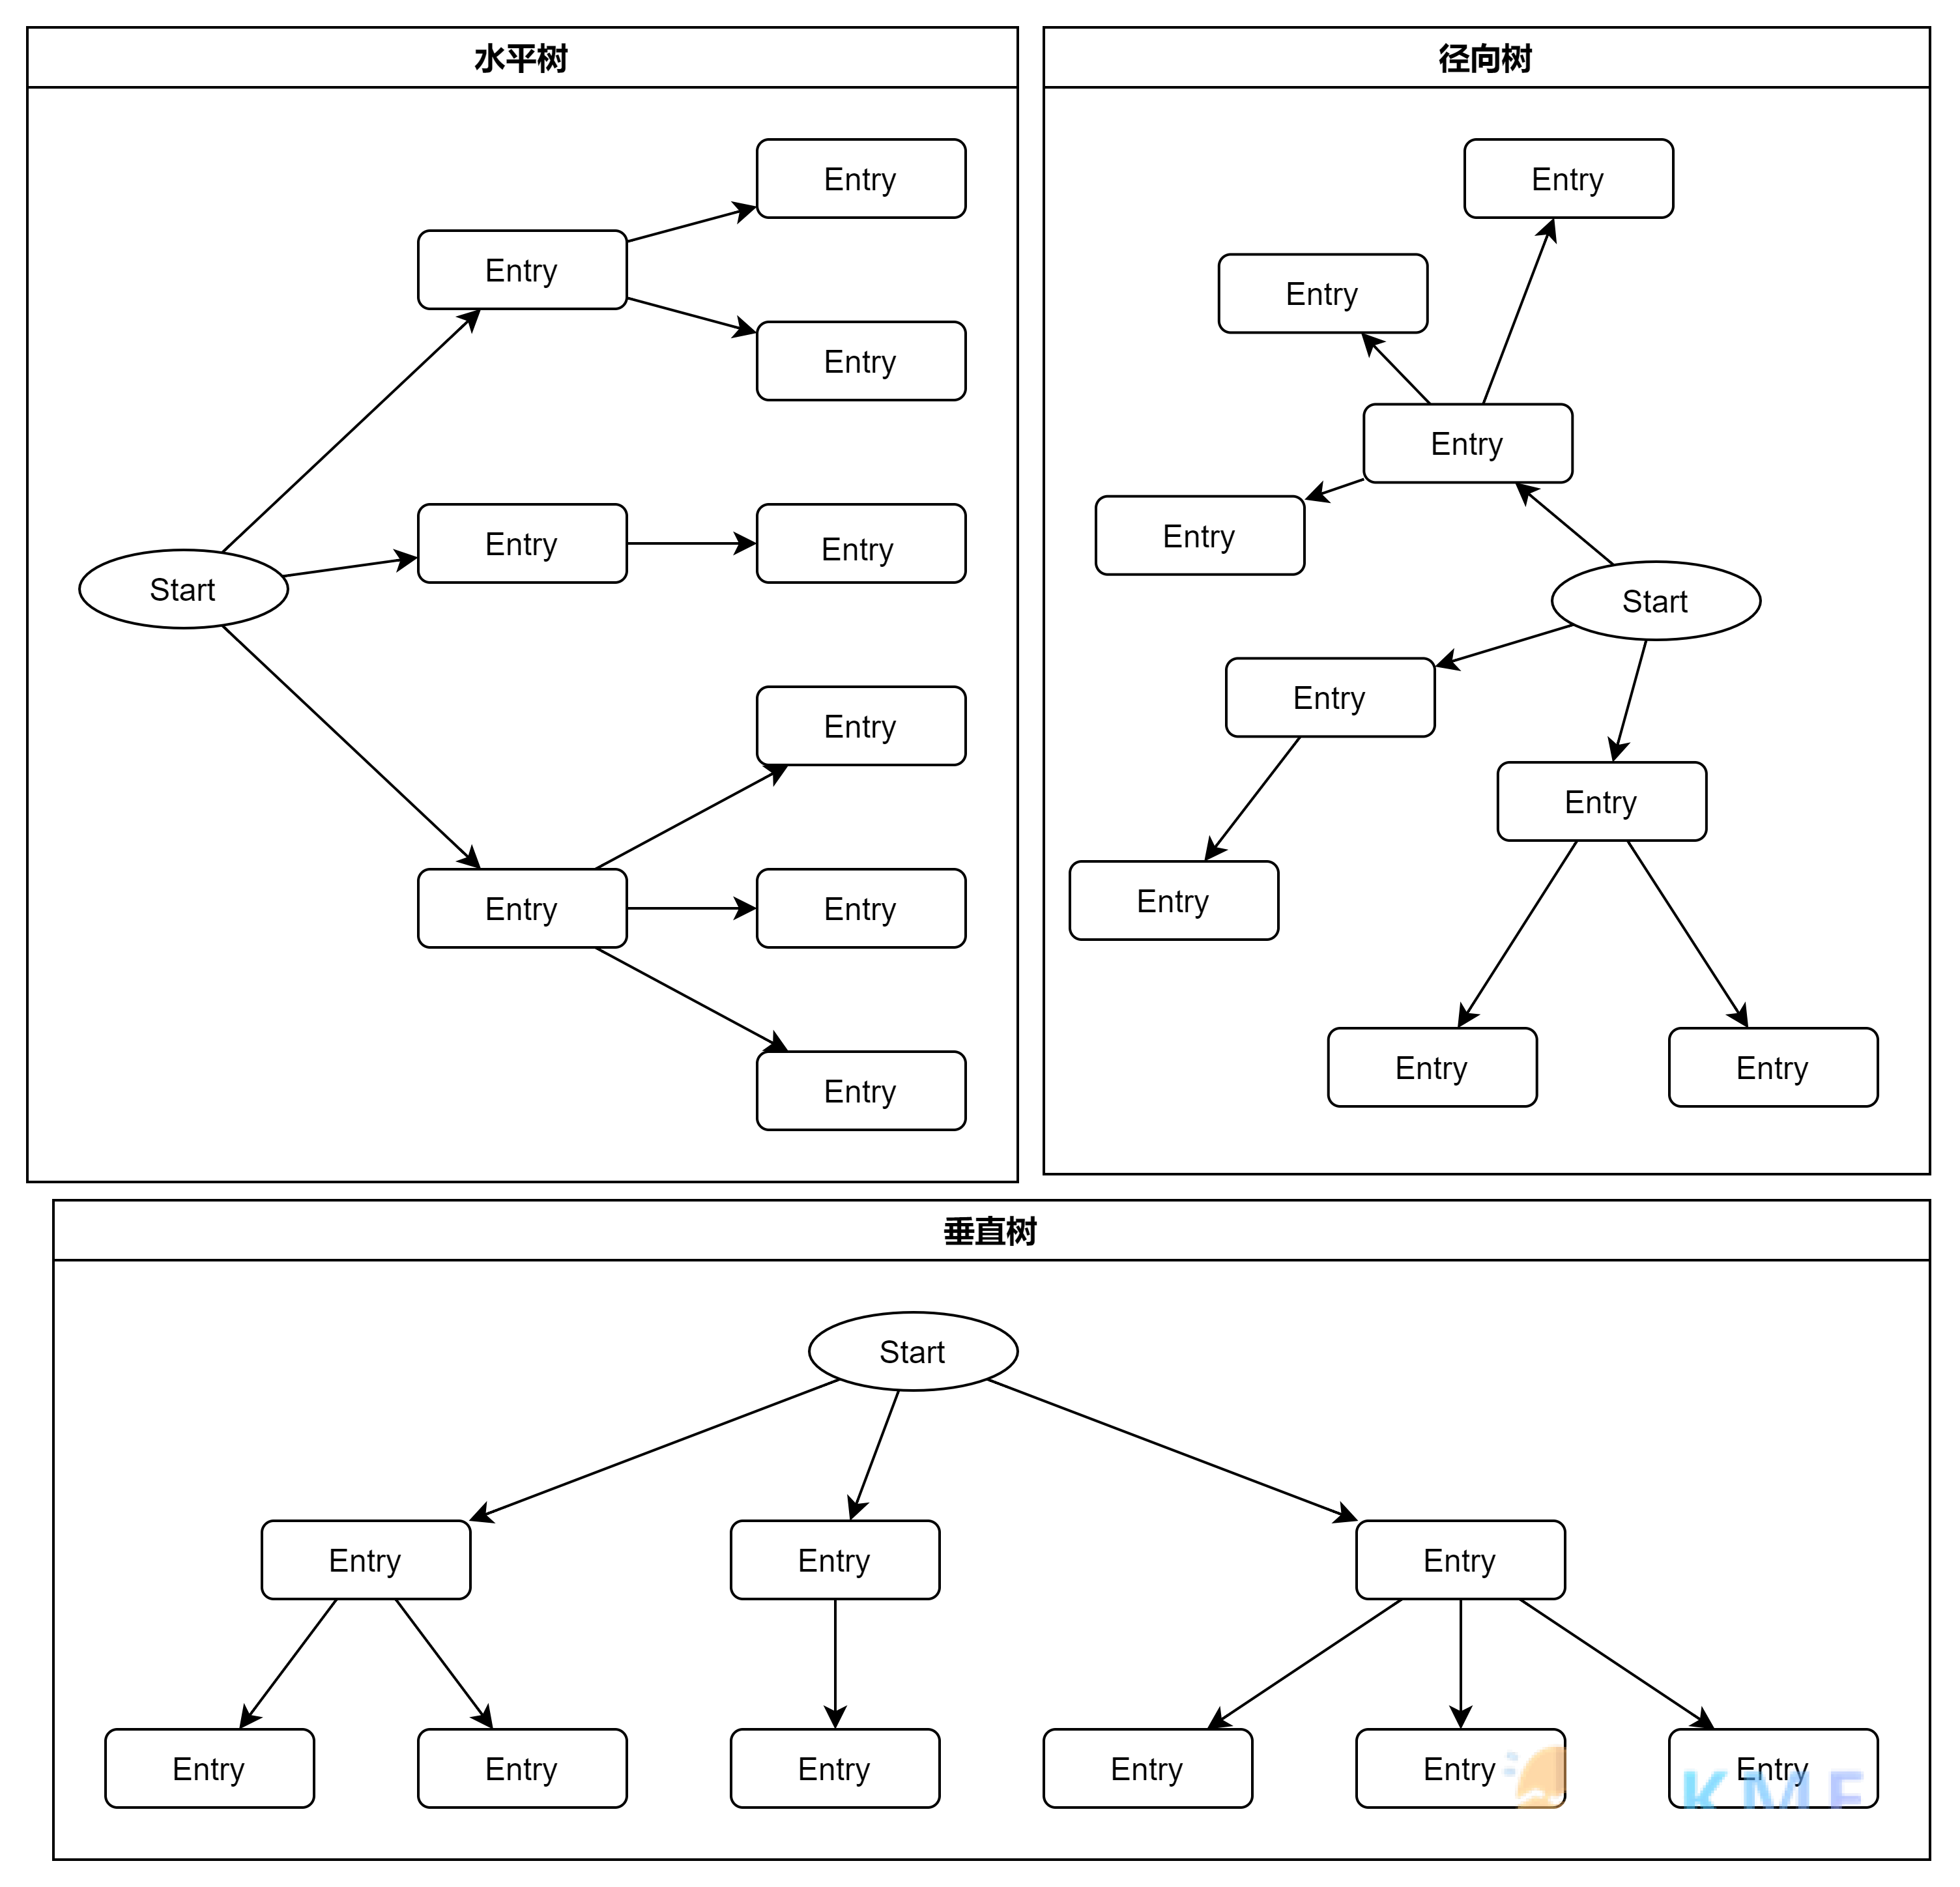 关于 Diagram 软件的功能介绍以及在 Obsidian 使用的方案--Tree layouts